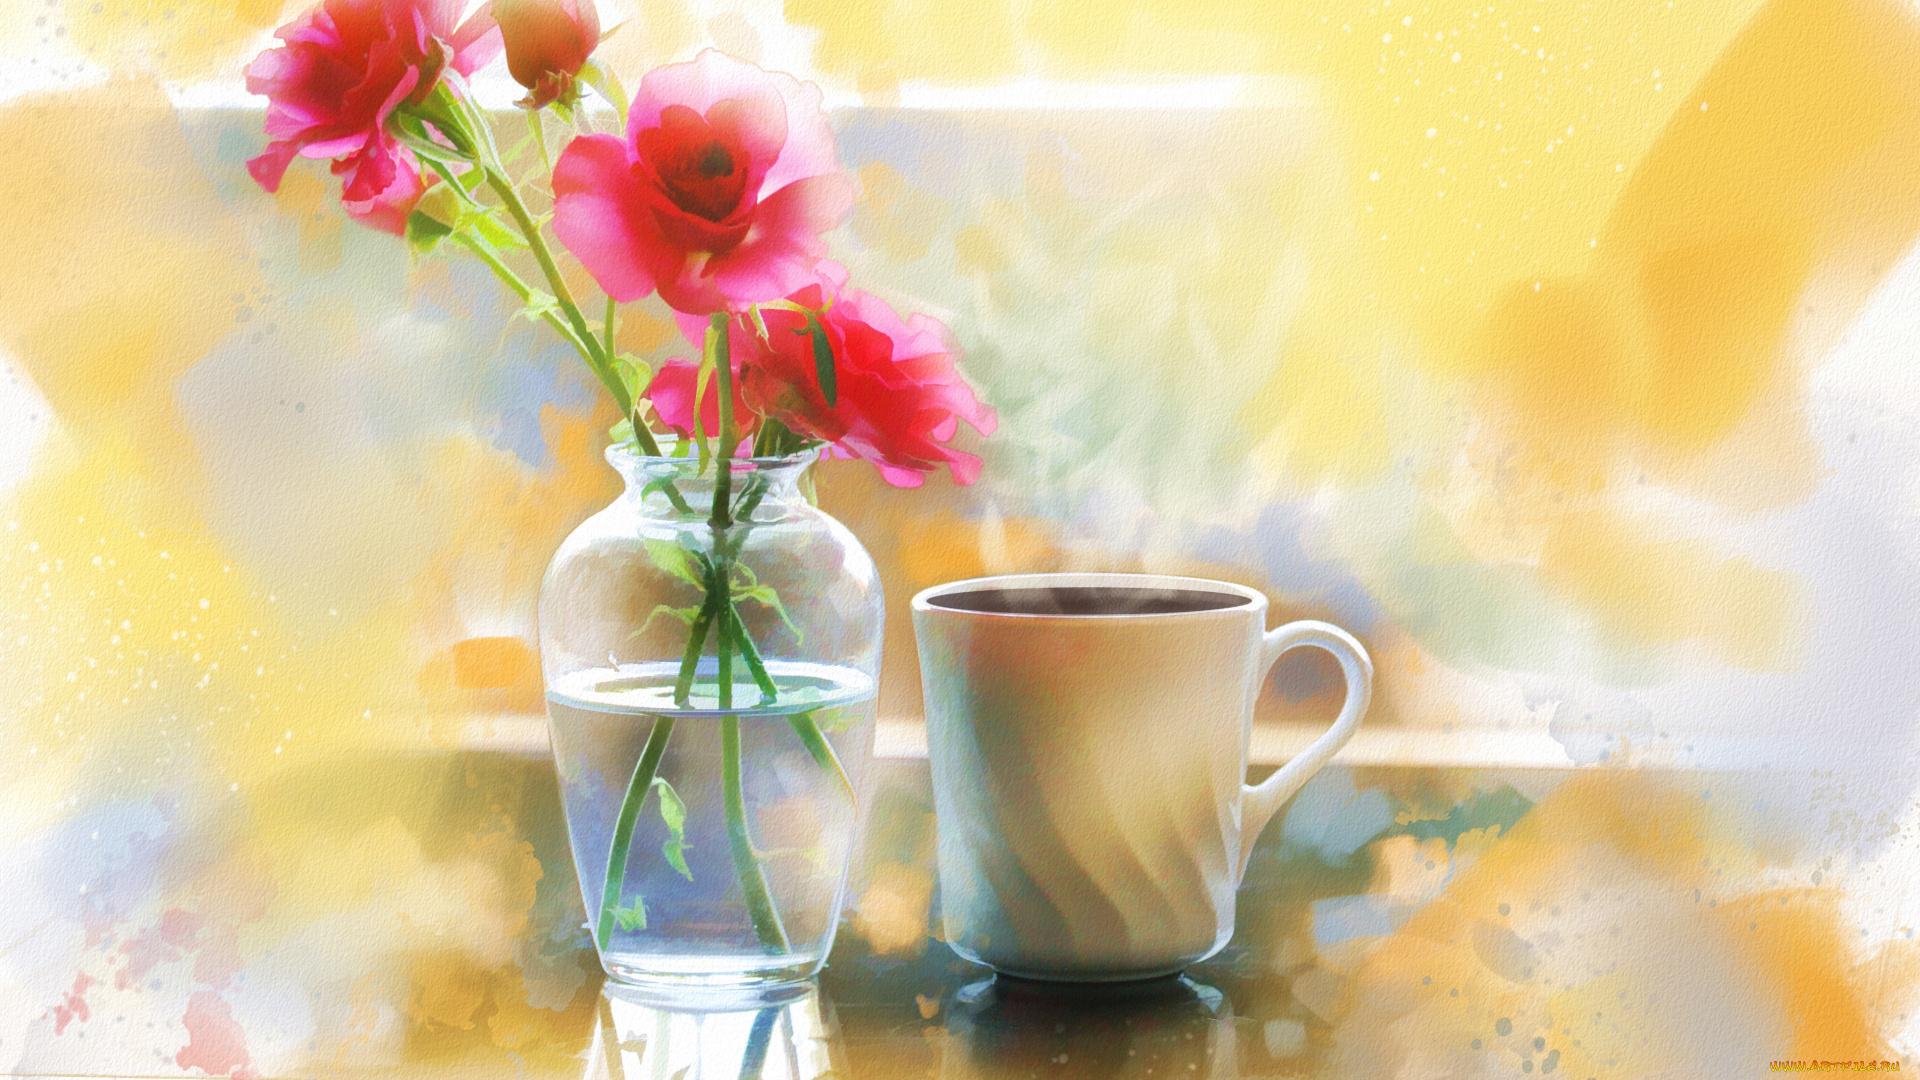 рисованные, живопись, натюрморт, ваза, цветы, розы, чашка, кофе